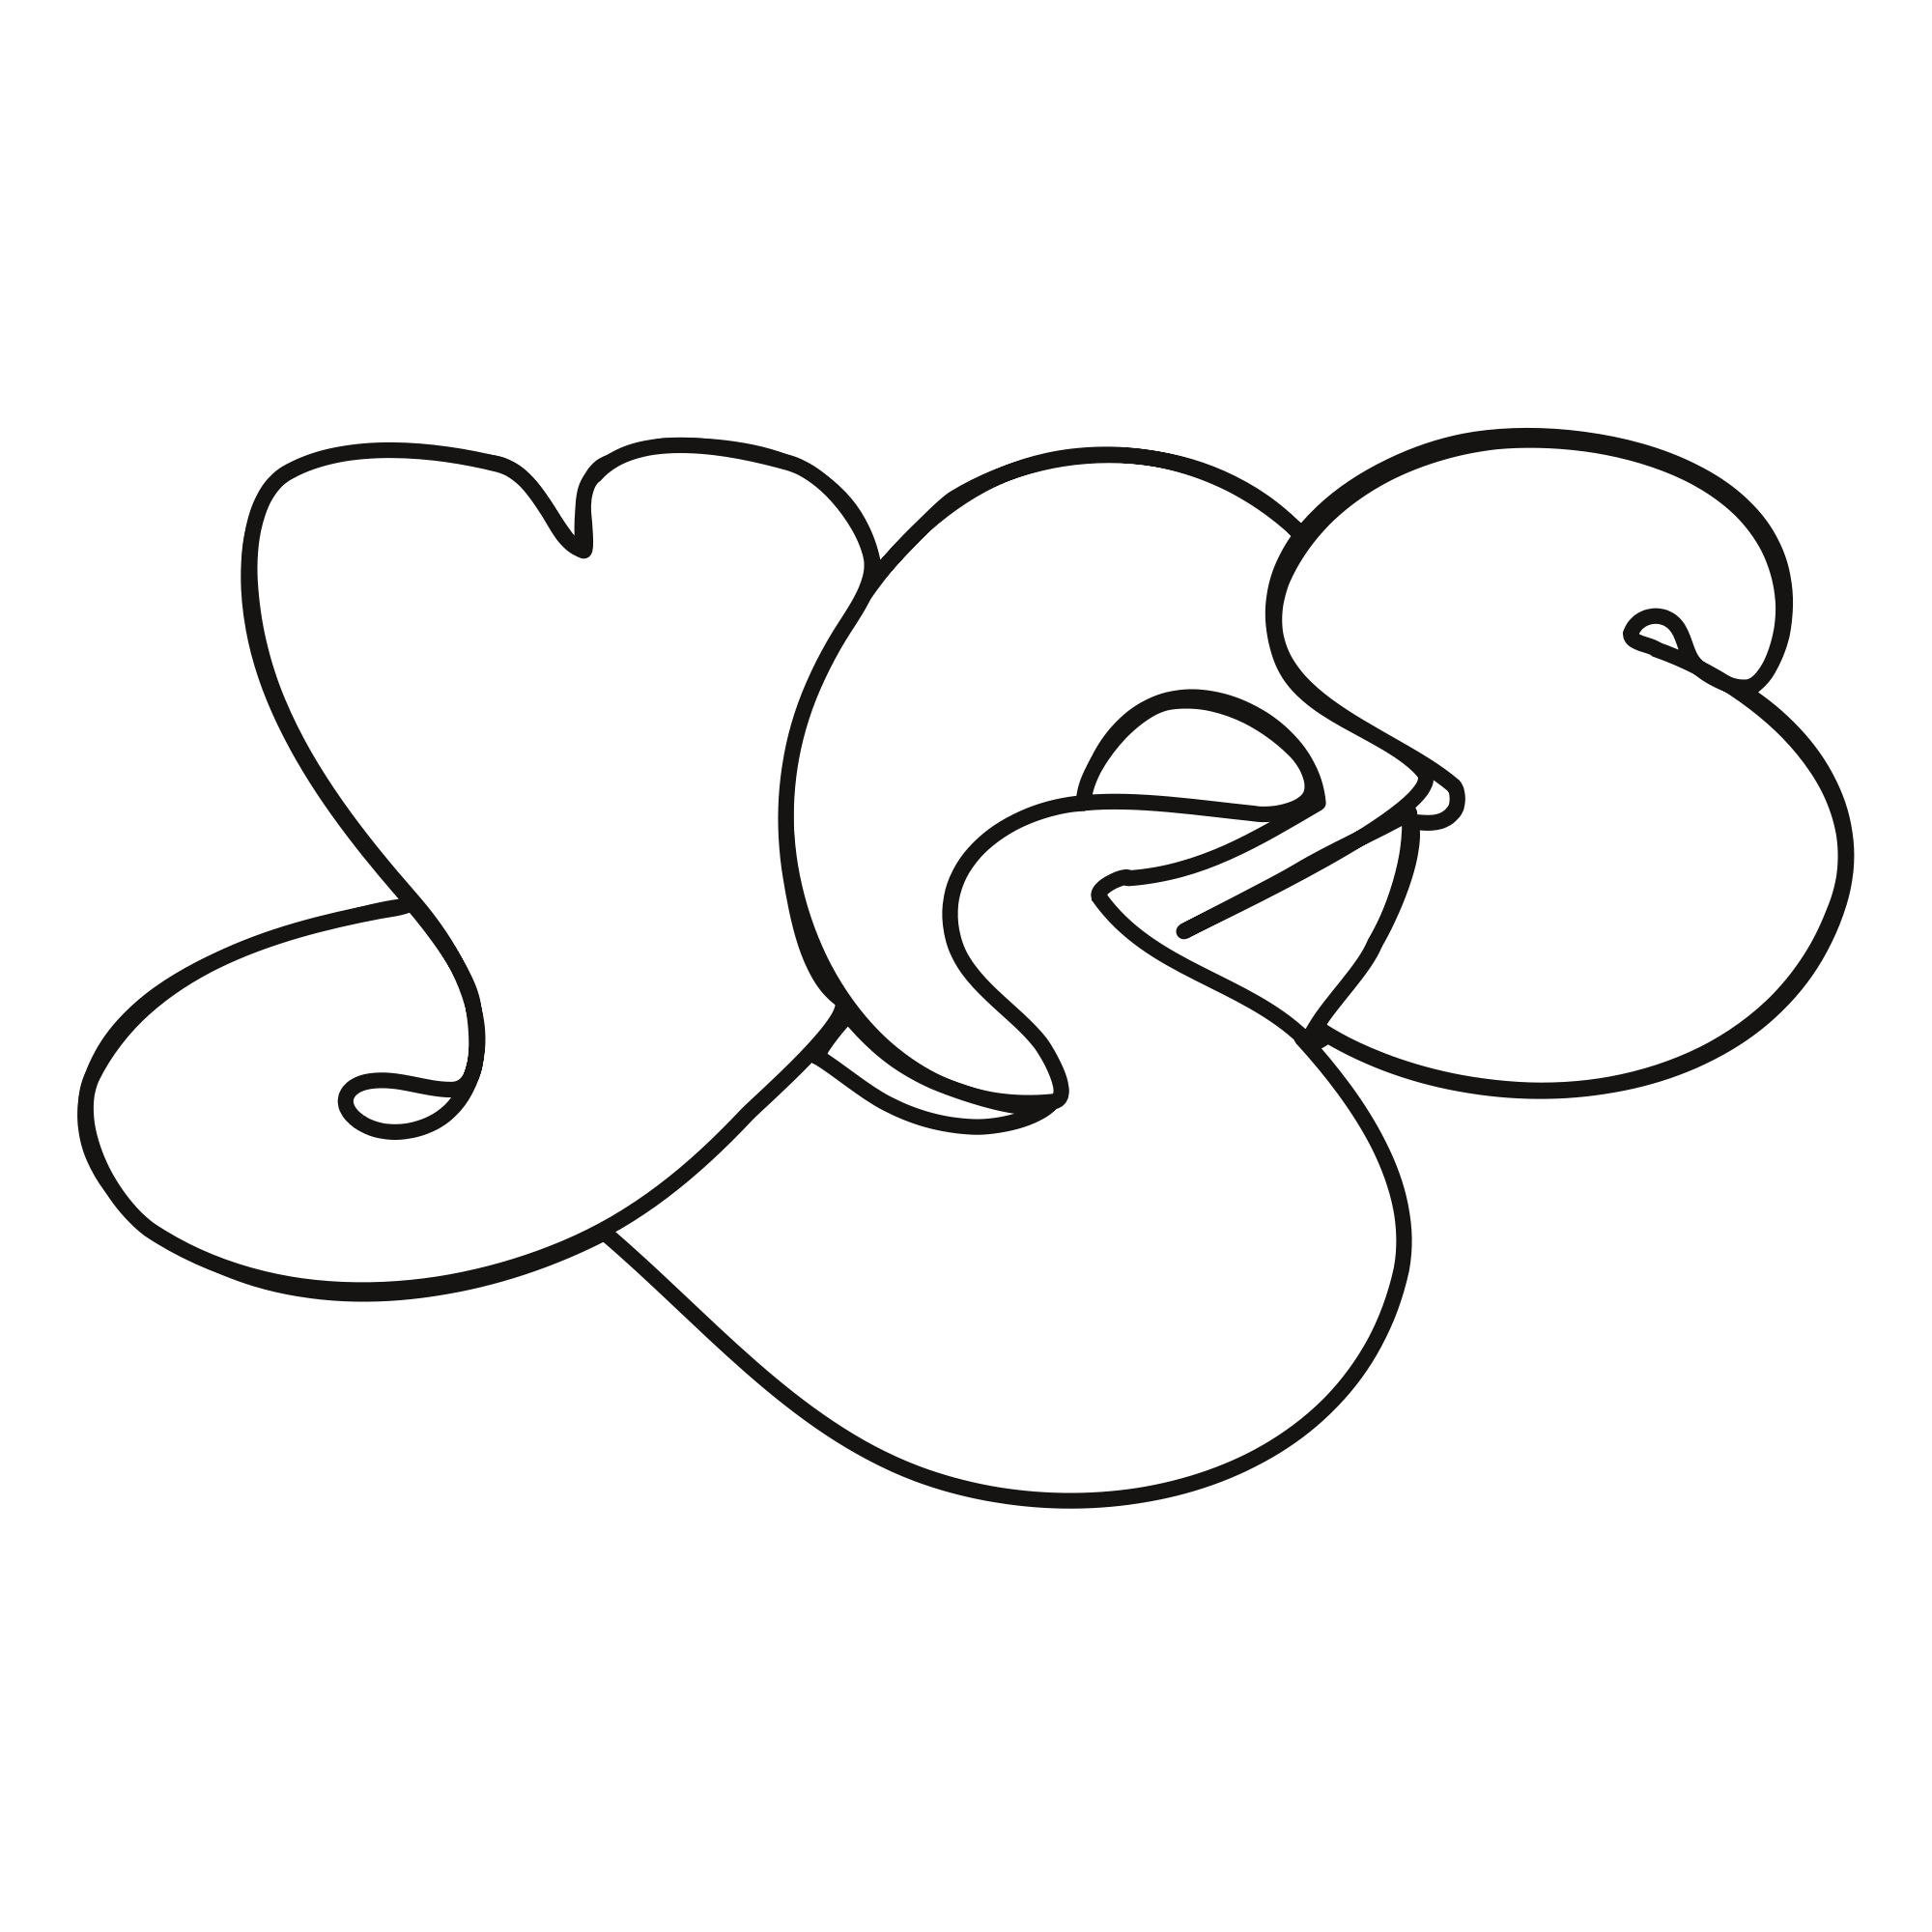 Yes Logo - File:Yes logo.svg - Wikimedia Commons